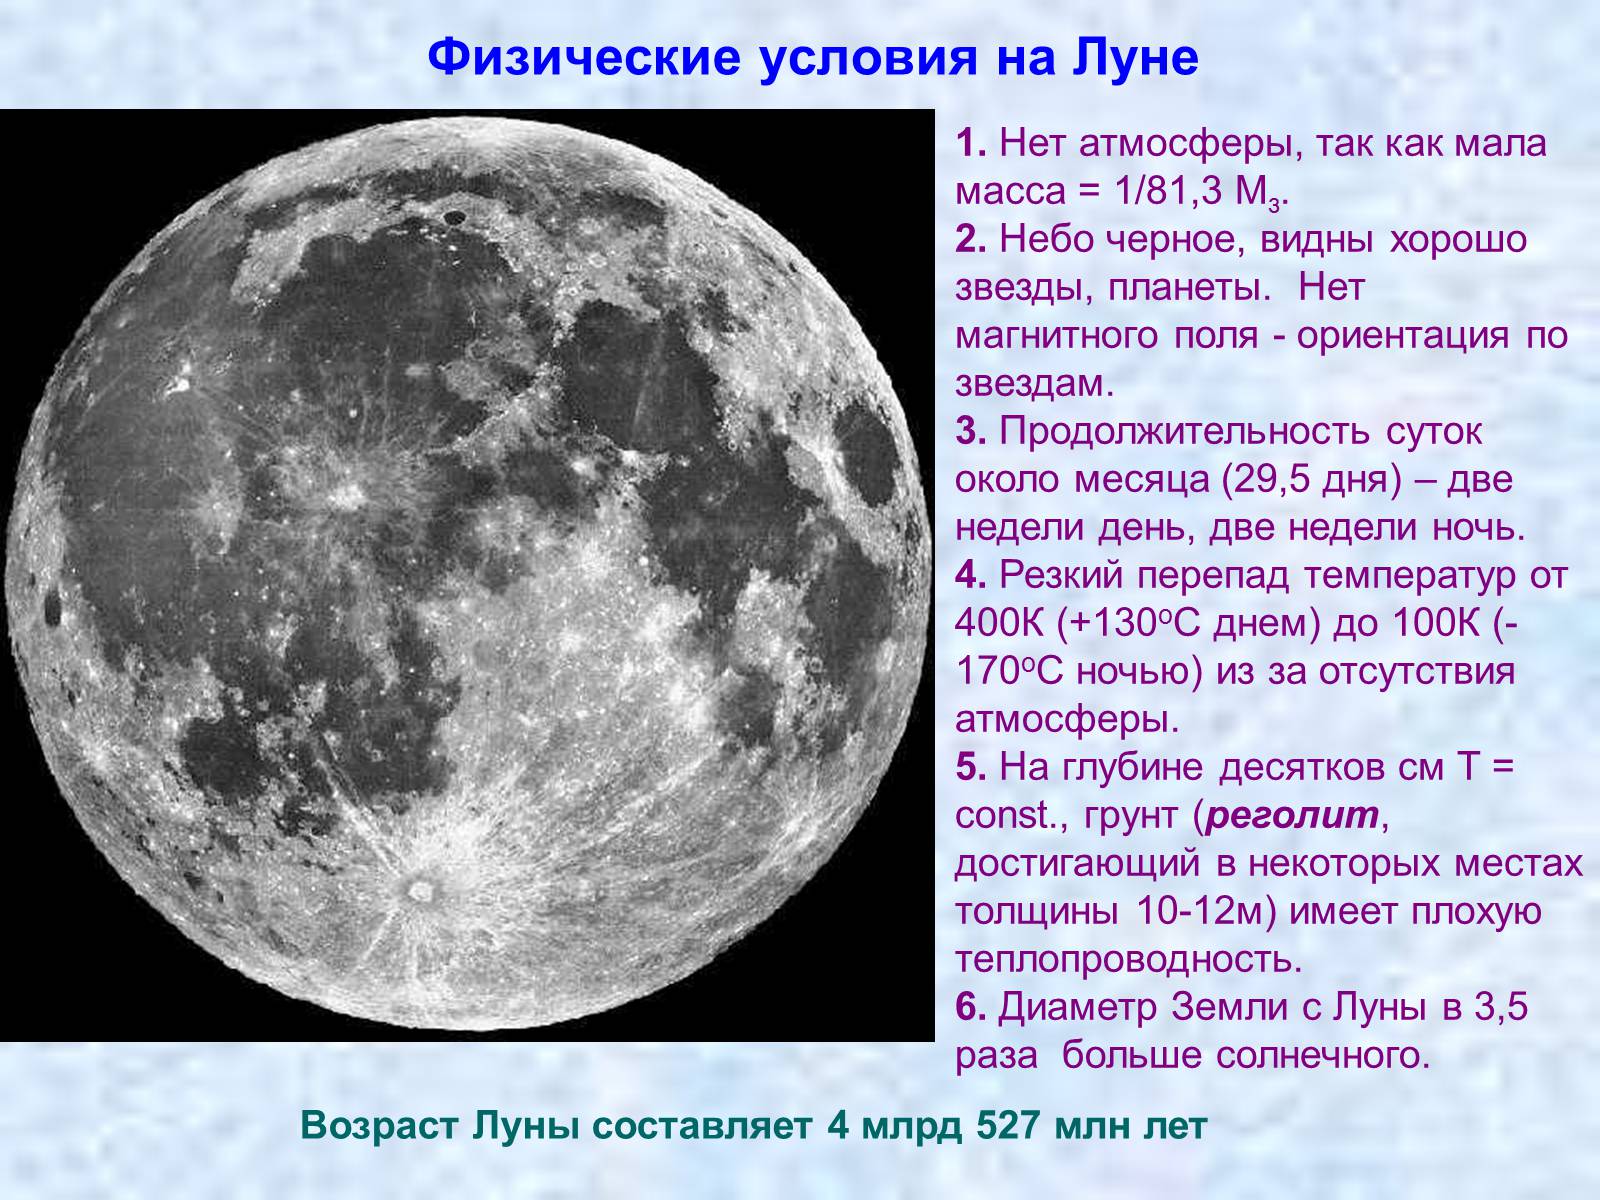 Физическое явление луны. Физические условия на Луне. Физическая природа Луны. Природа Луны физические условия на Луне. Физические условия на Луне астрономия.